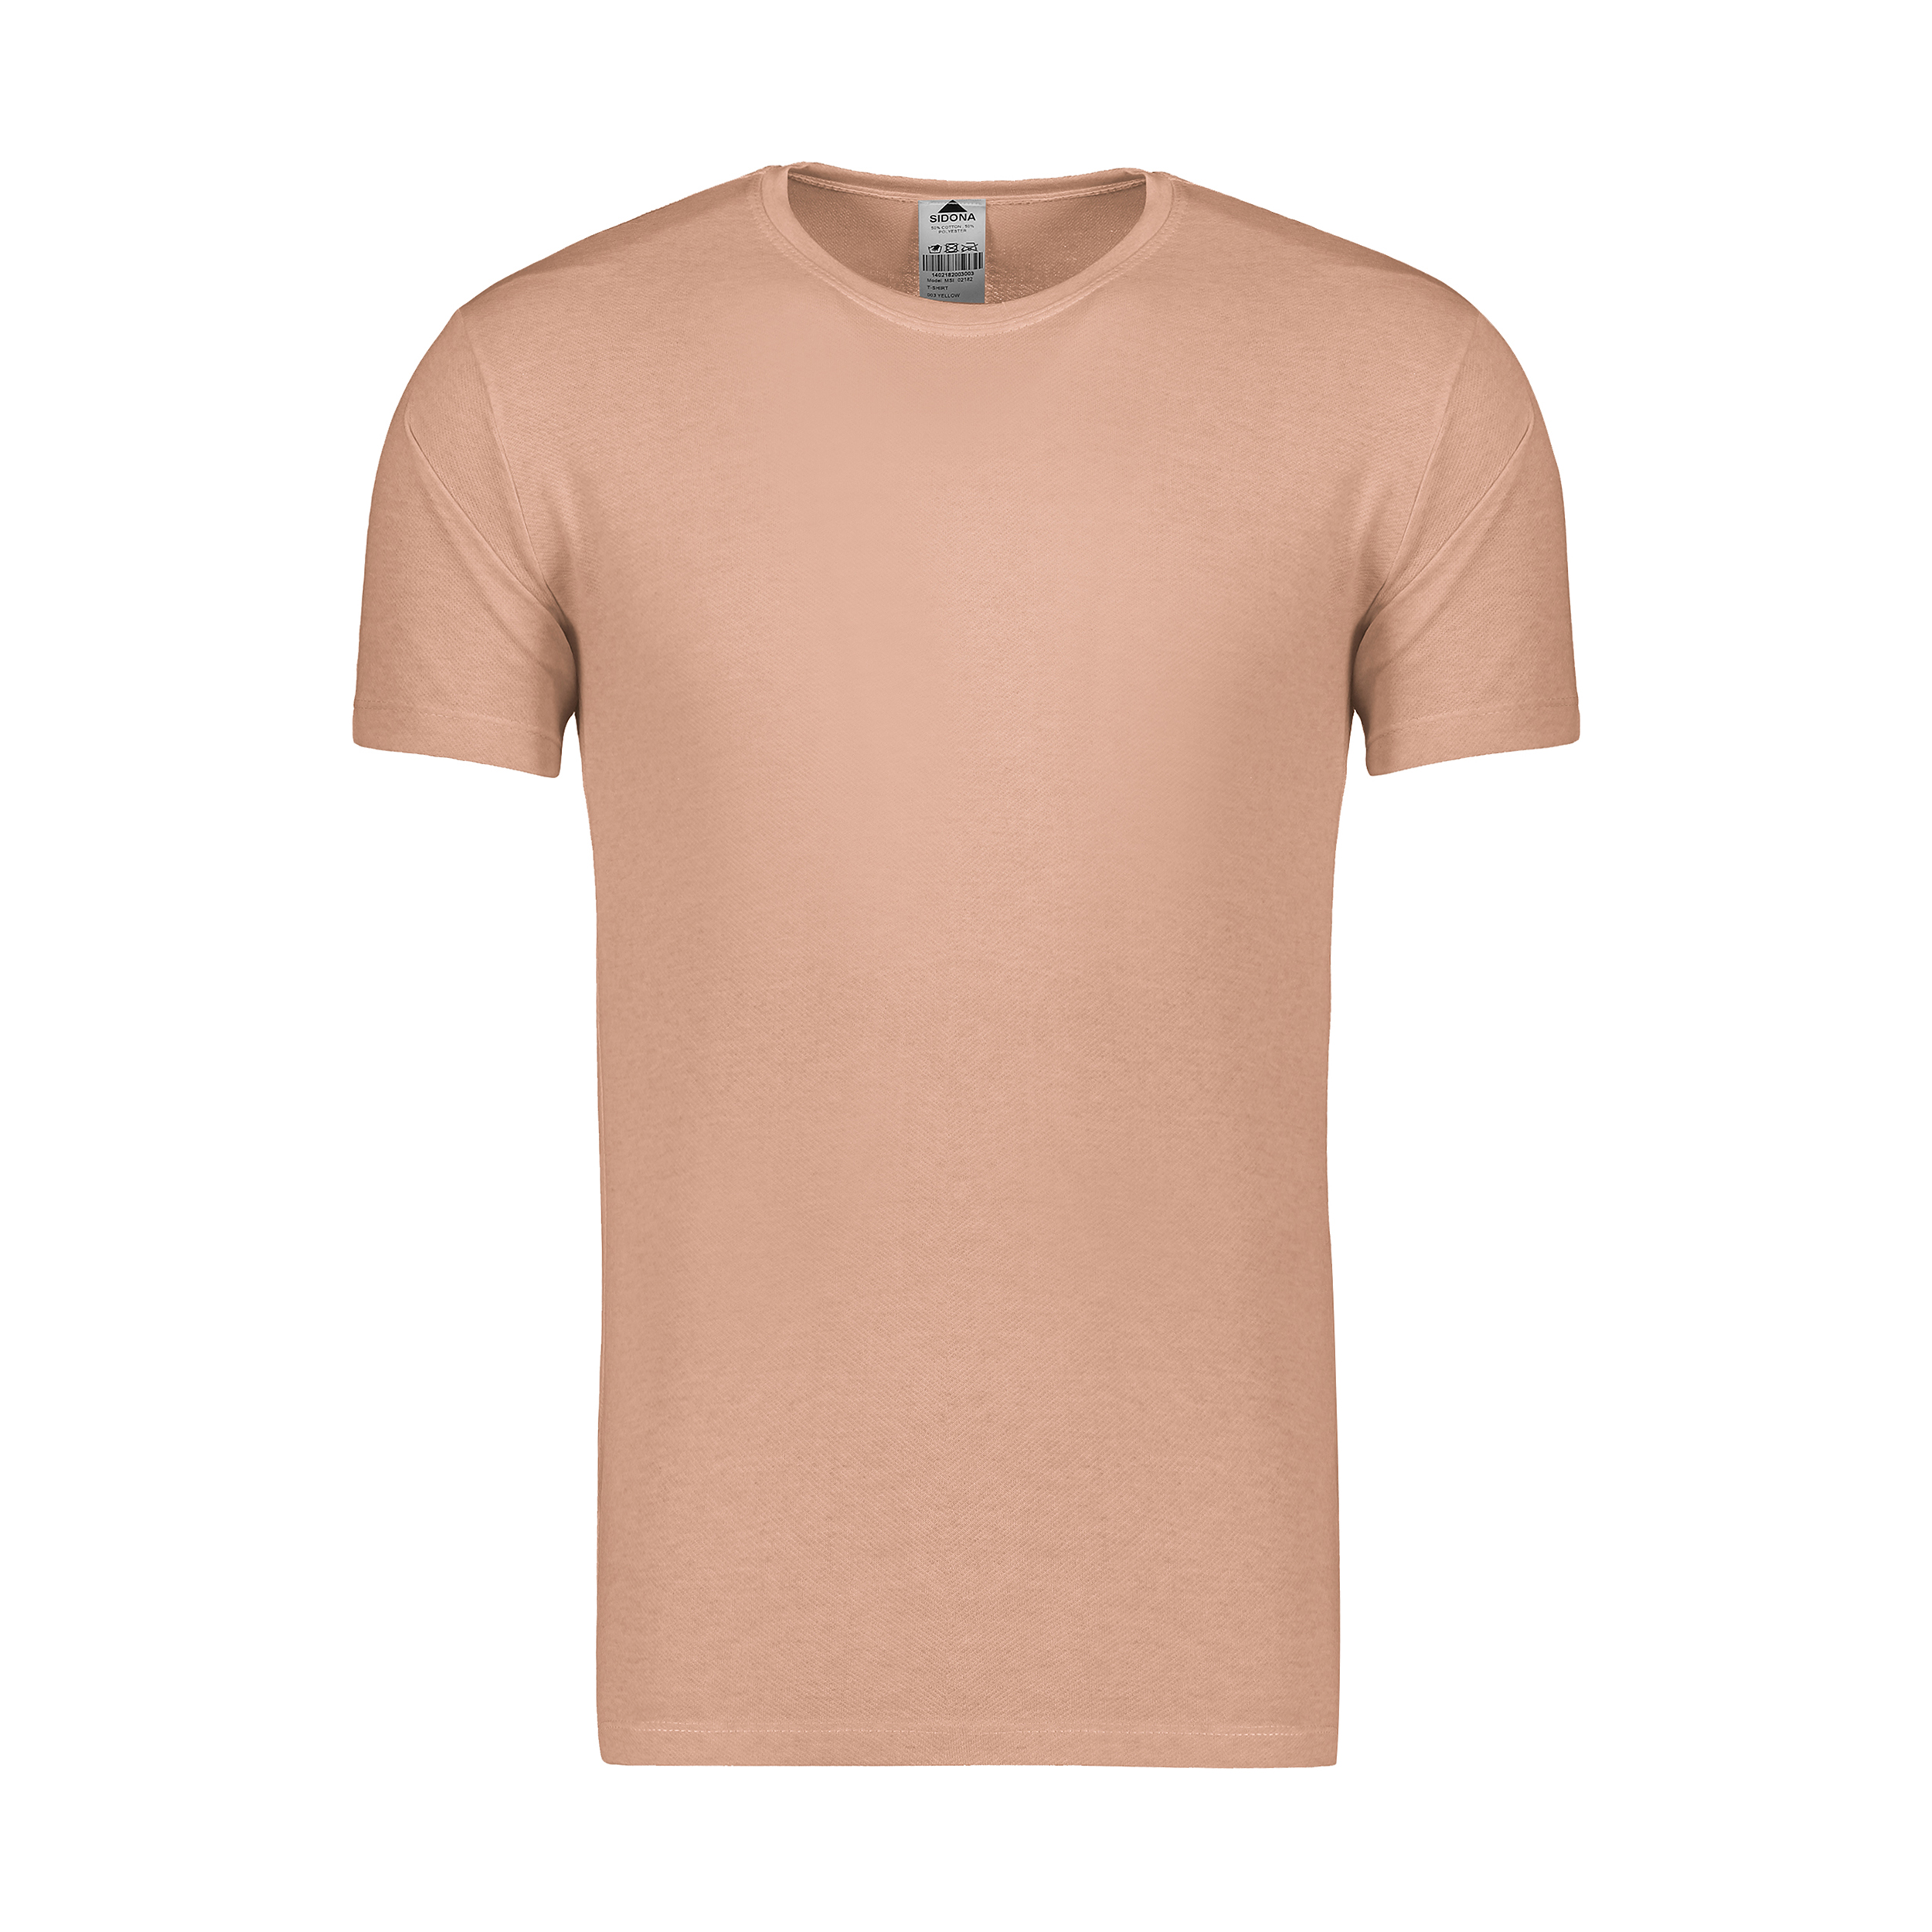 نقد و بررسی تی شرت مردانه سیدونا مدل MSI02182-010 توسط خریداران